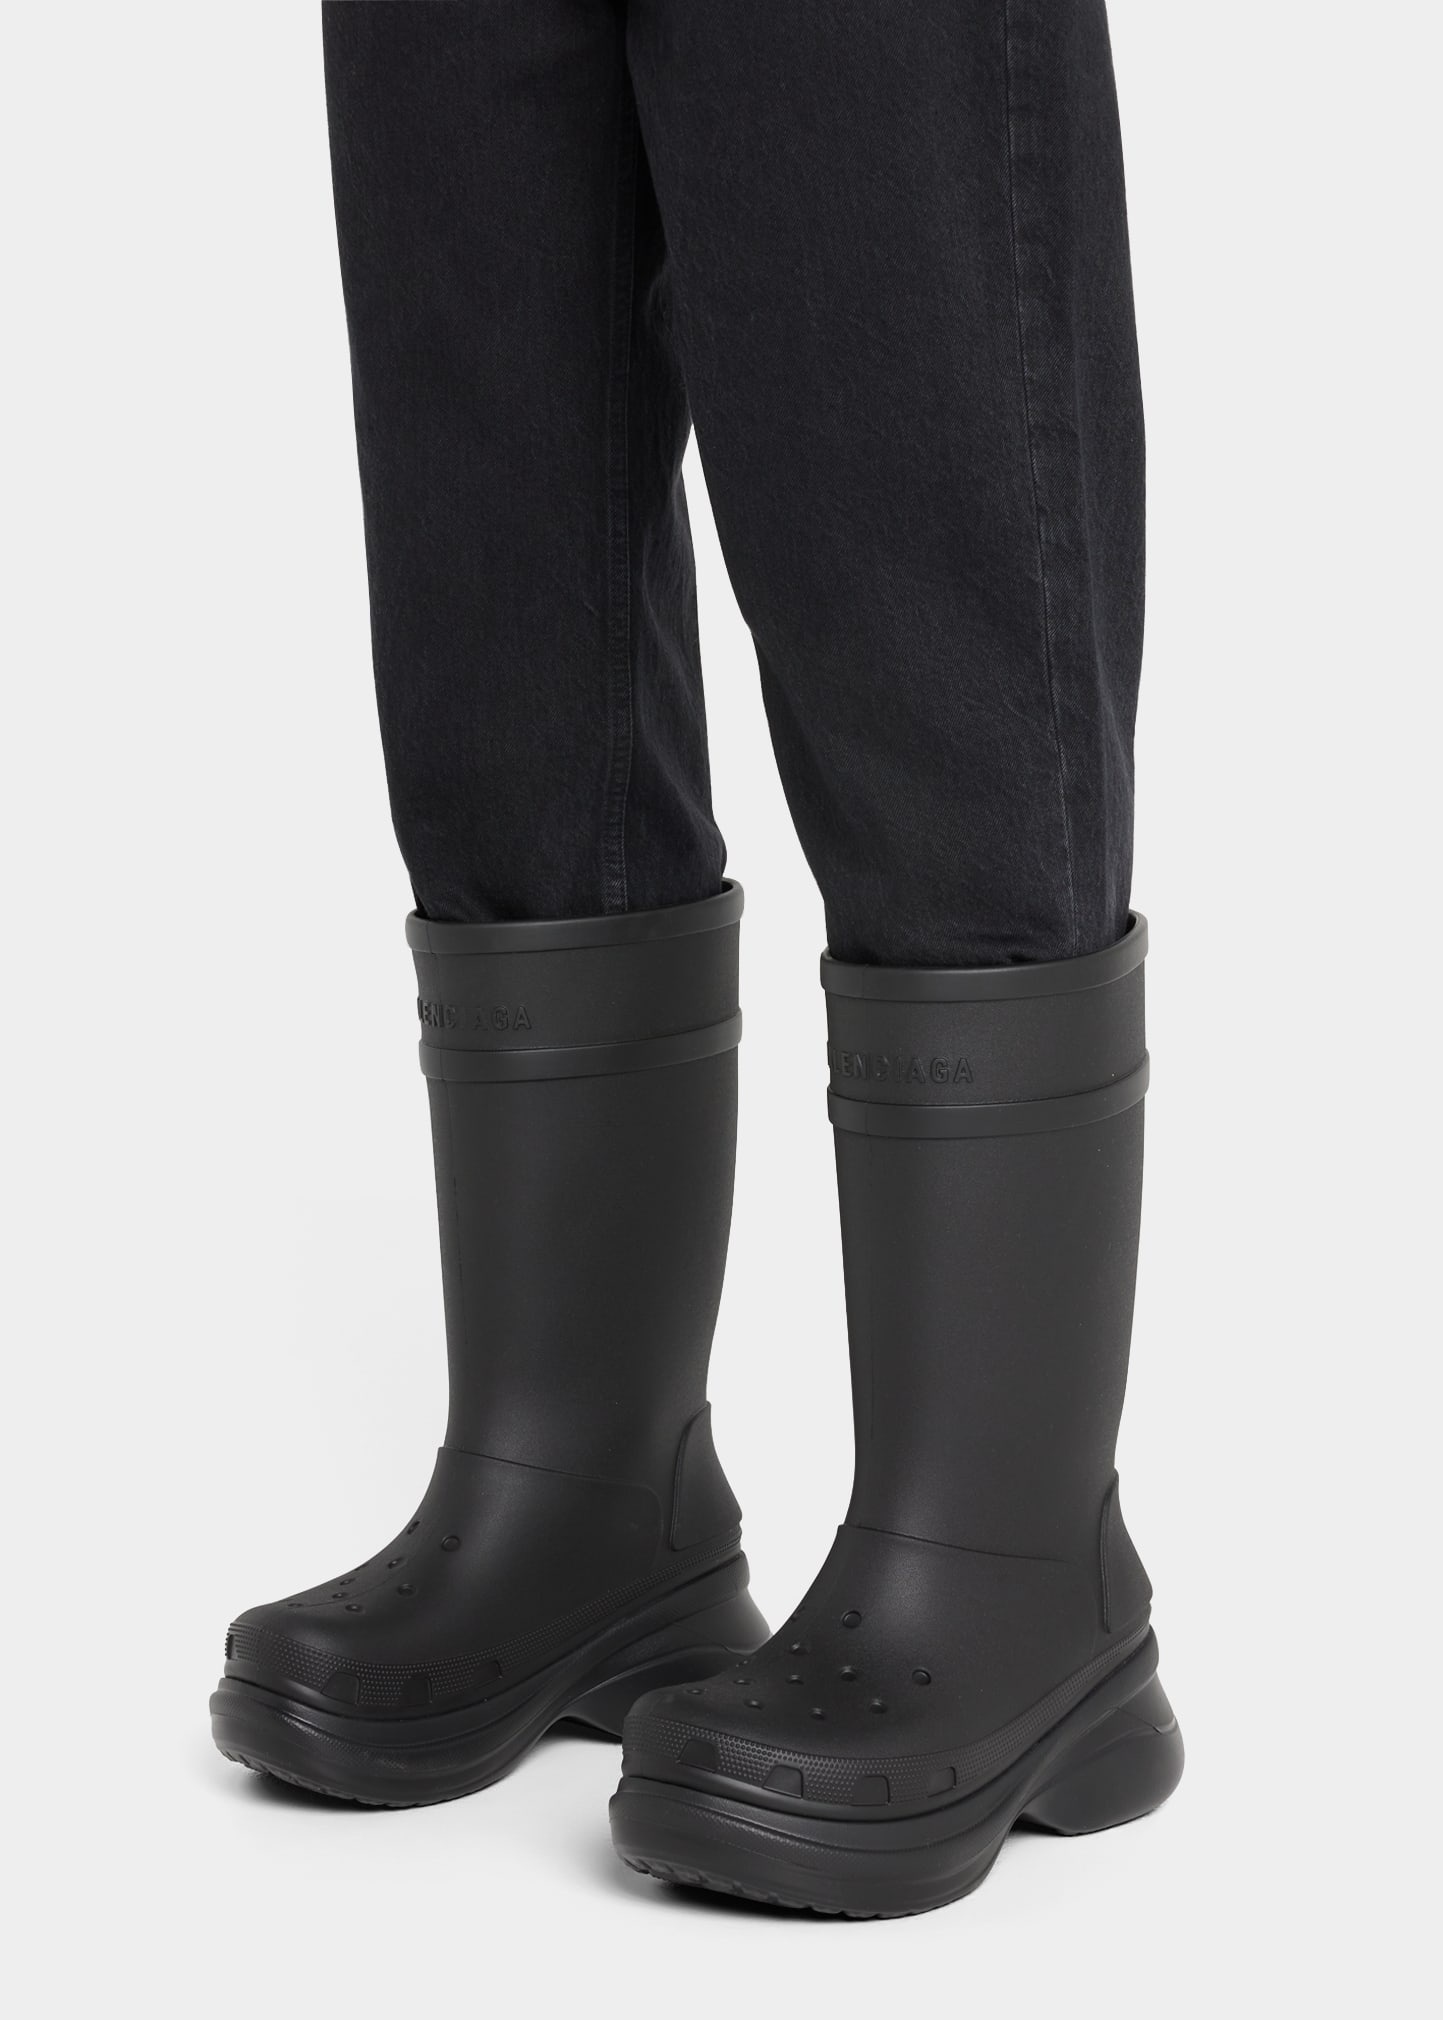 x Crocs™ Men's Tonal Rubber Rain Boots - 2